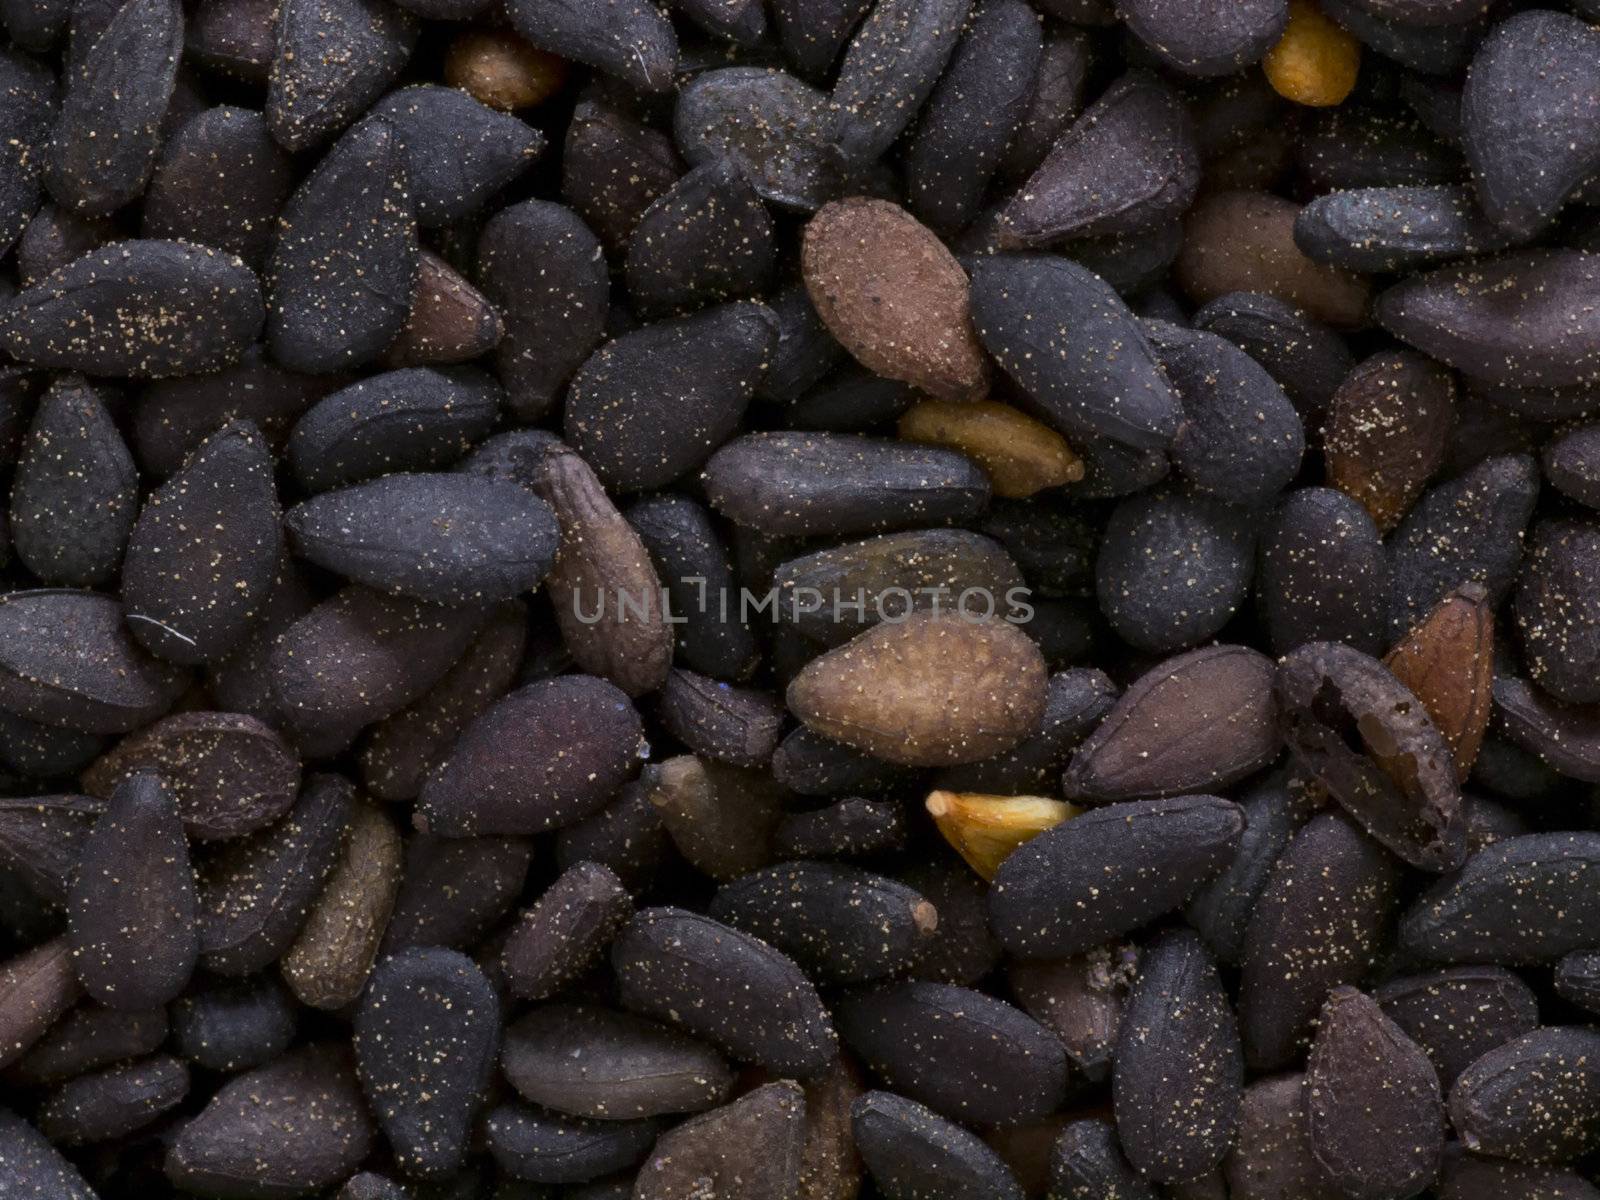 black sesame seeds by zkruger